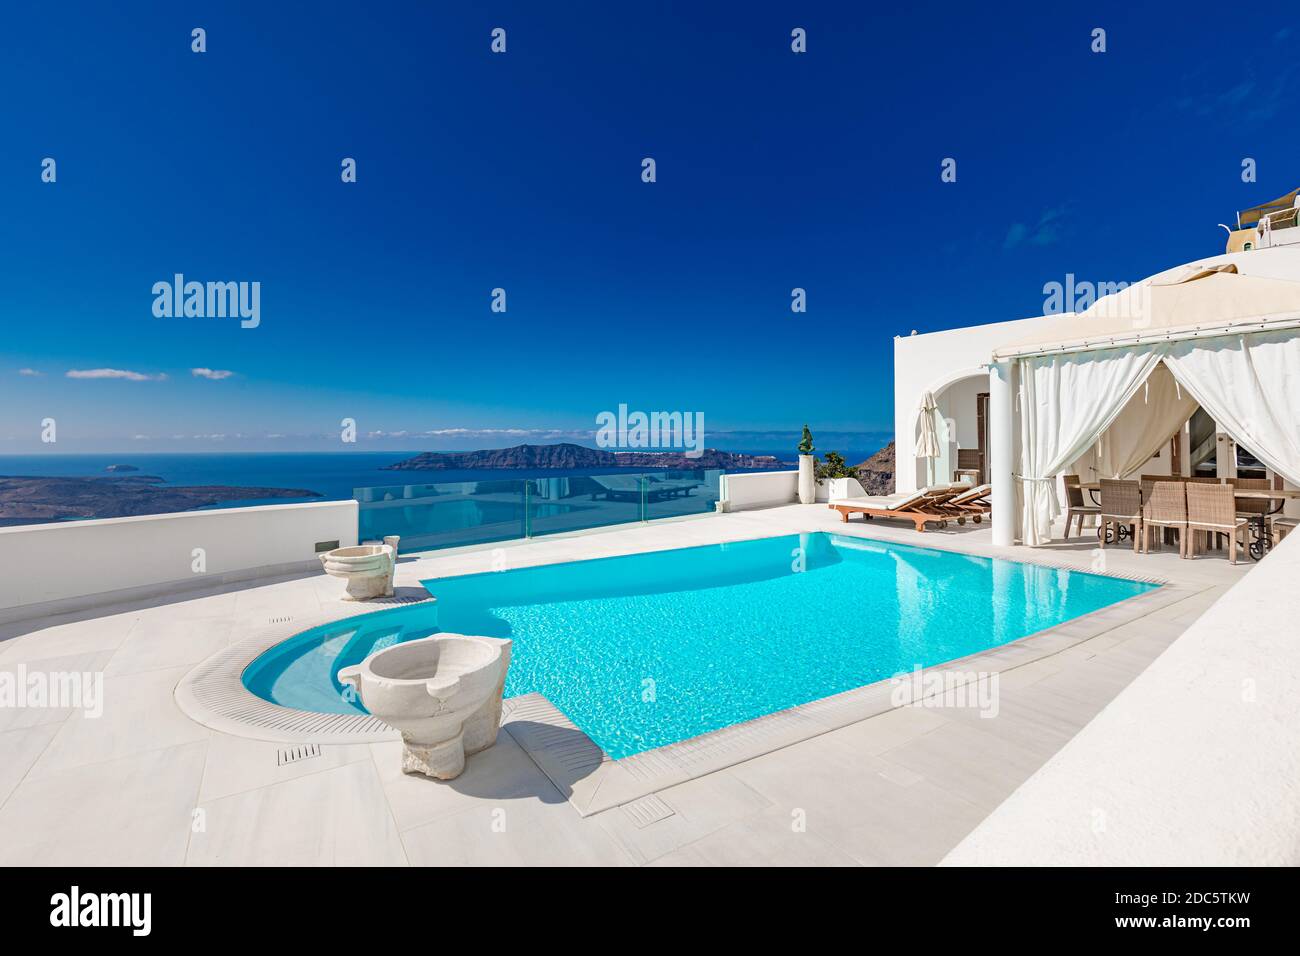 Blick auf Caldera und Pool, typische weiße Architektur, romantisches Dorf auf Santorini Insel, Griechenland. Sommerurlaub, Kreuzfahrtschiffe, Meerblick Stockfoto